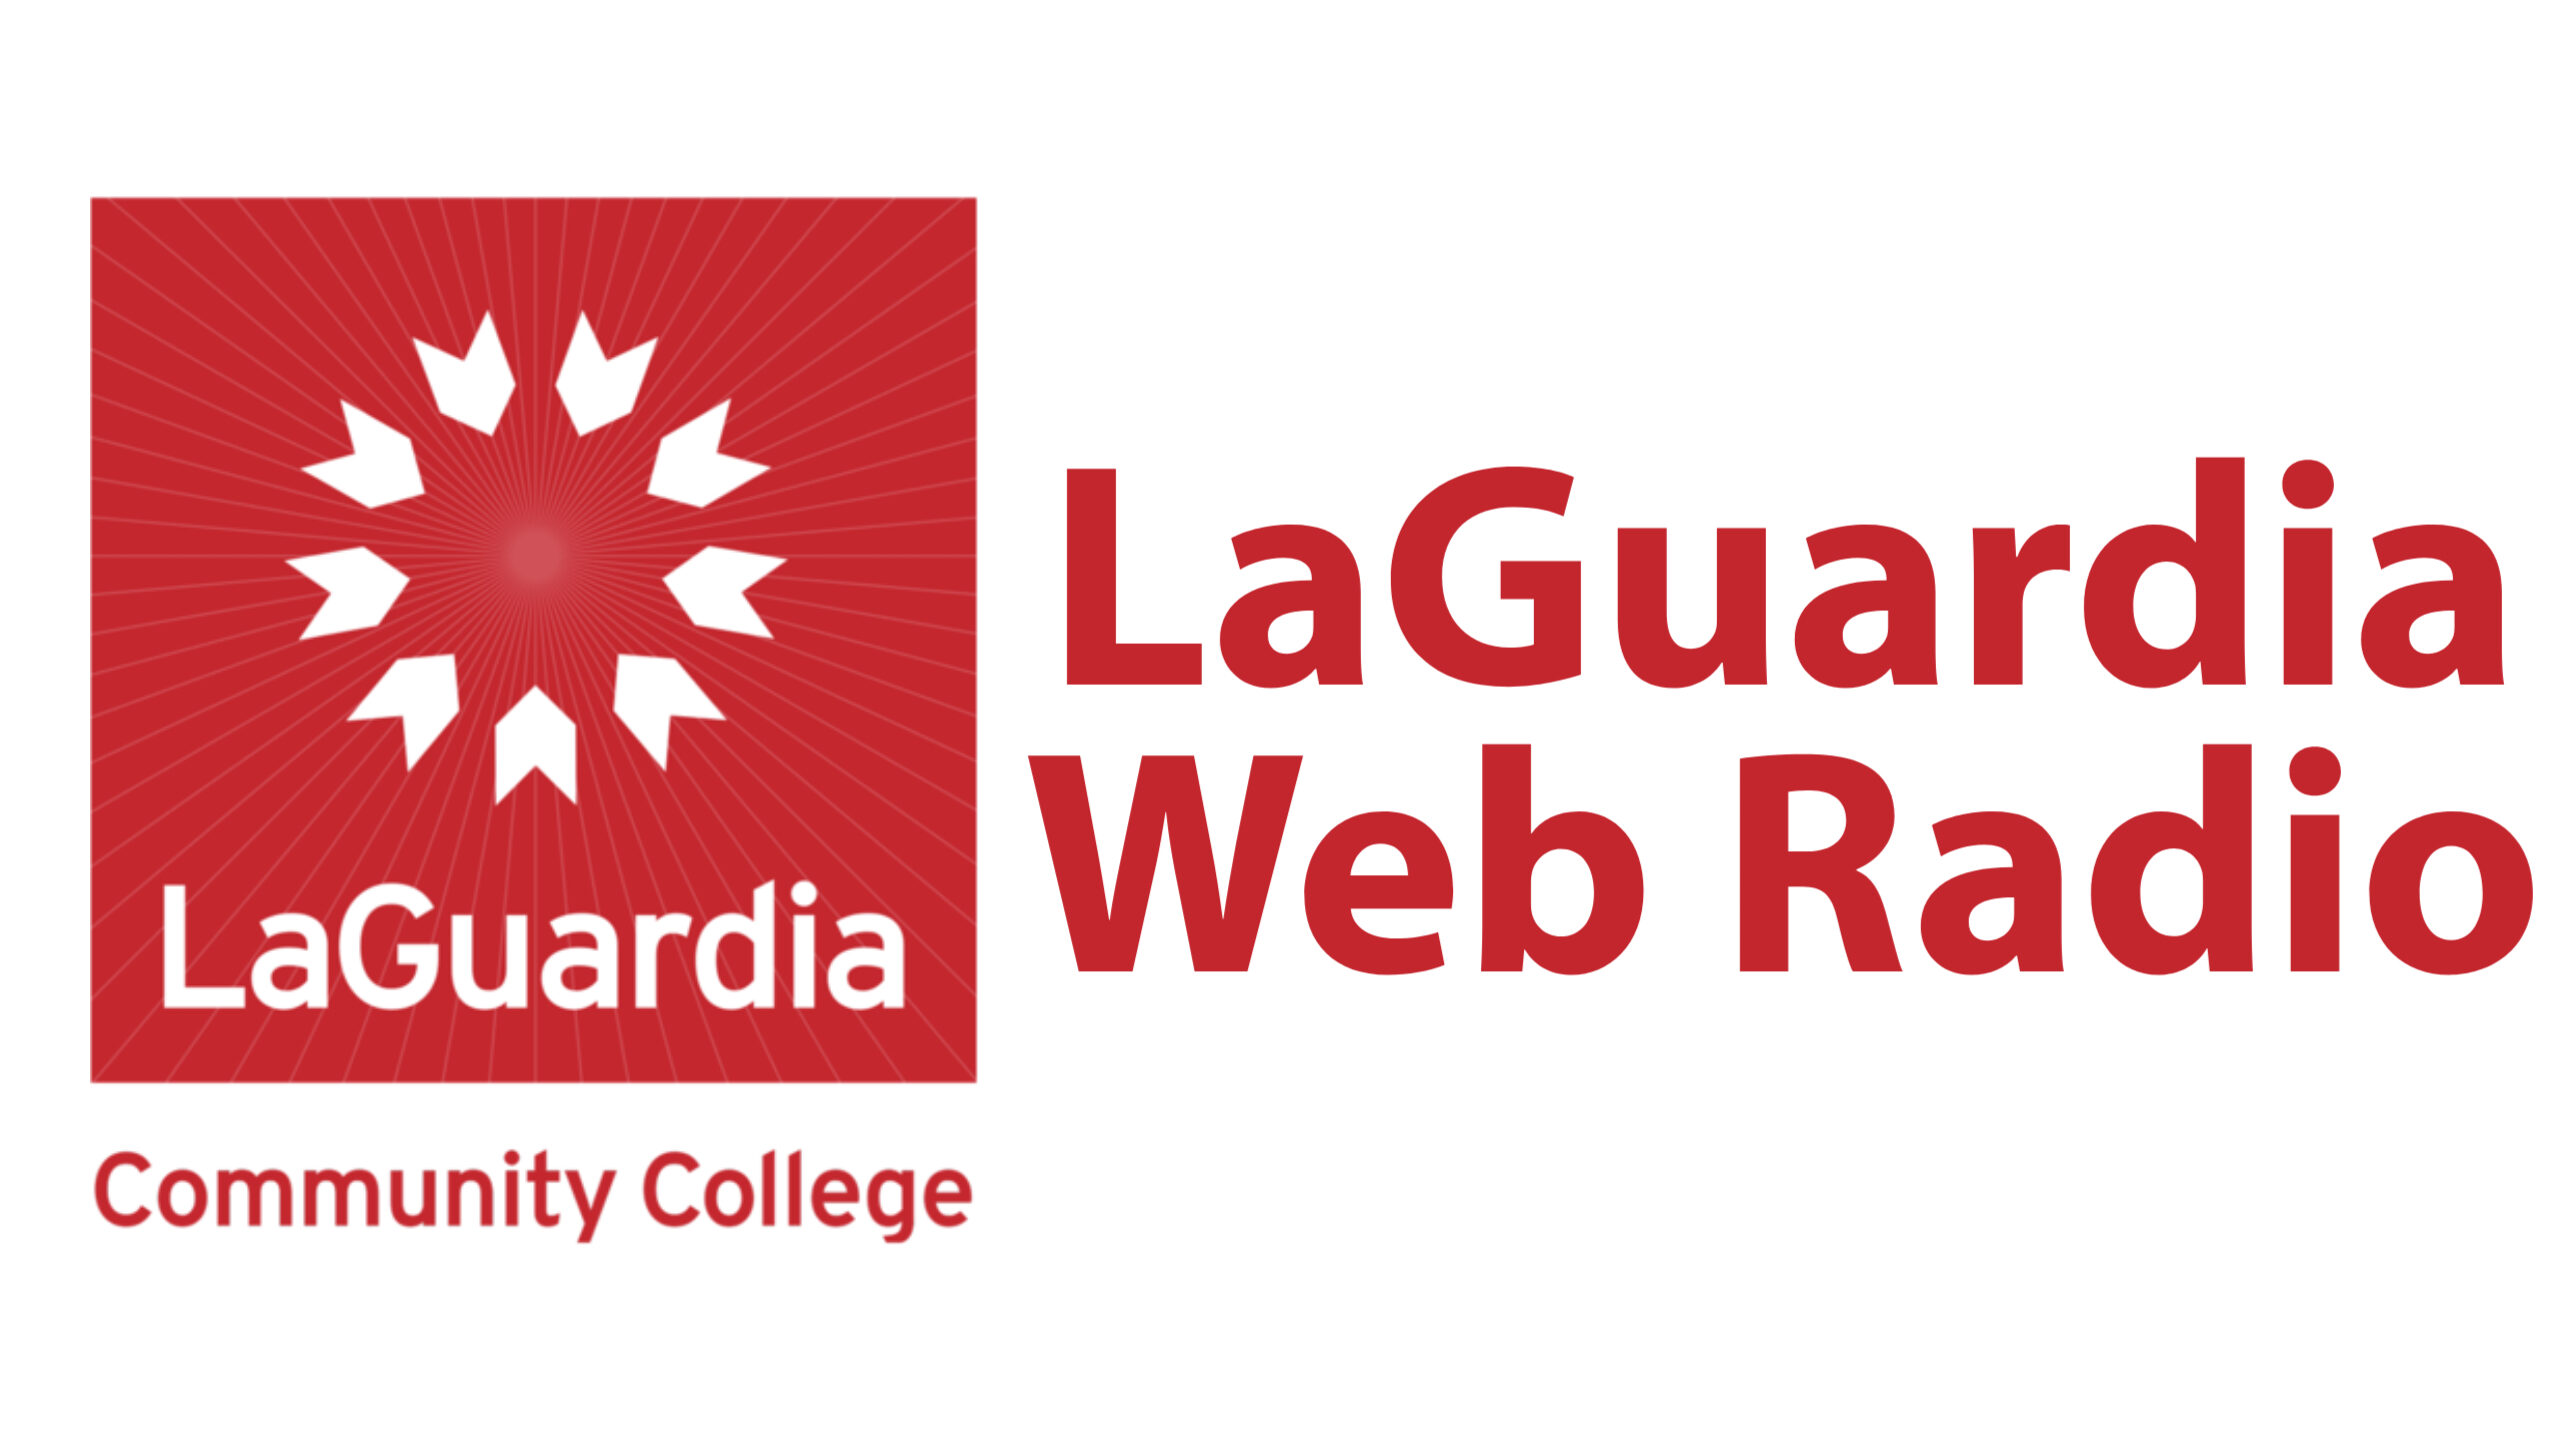 LaGuardia Web Radio